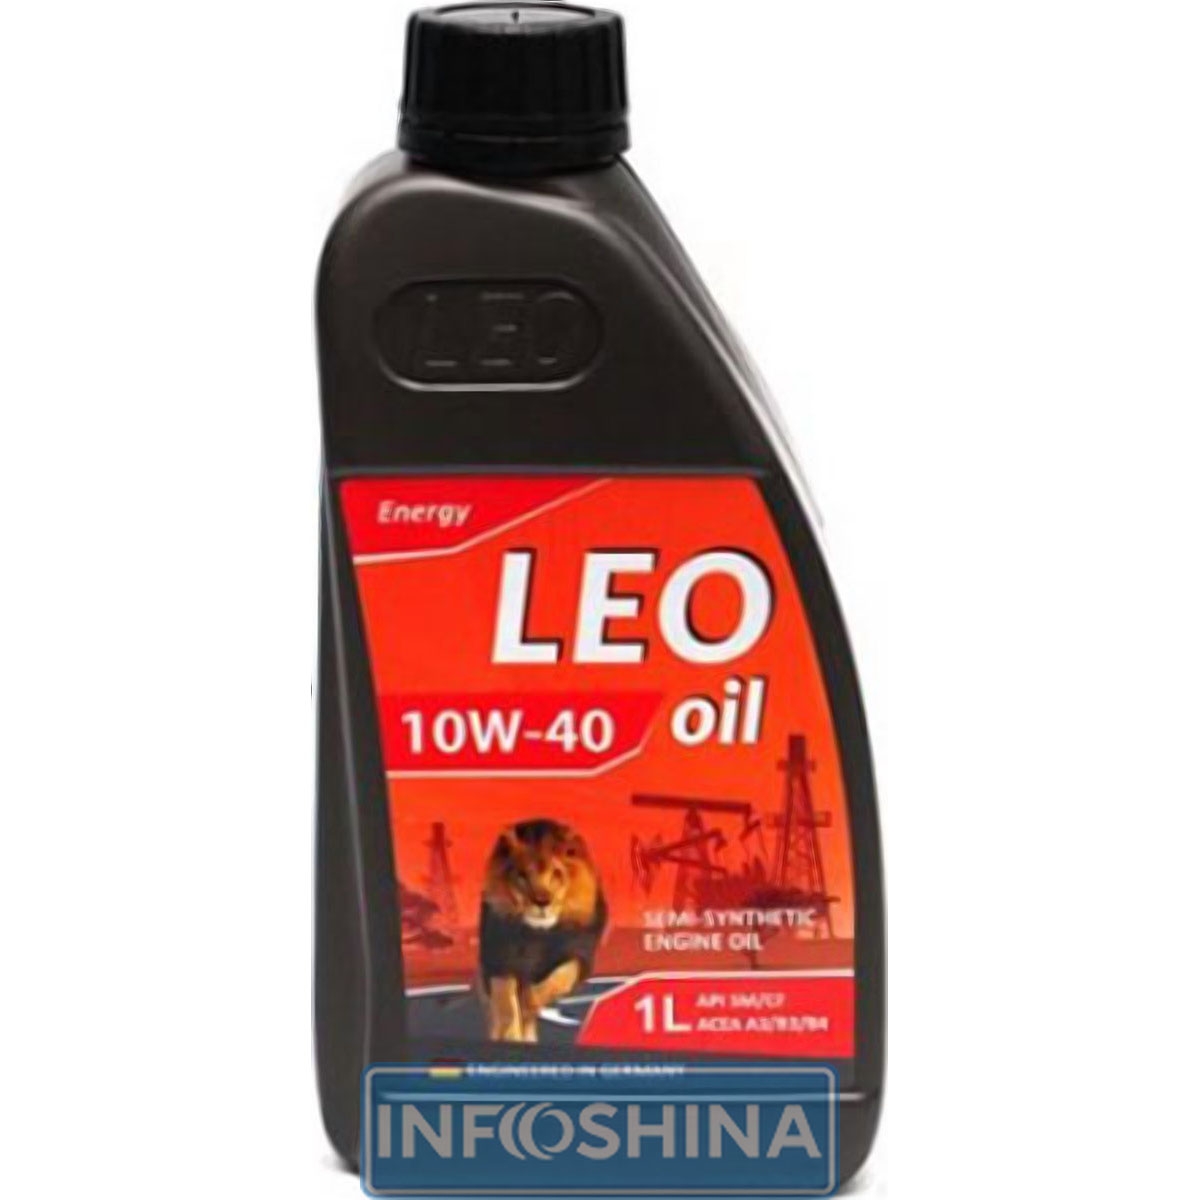 LEO Oil Energy 10W-40